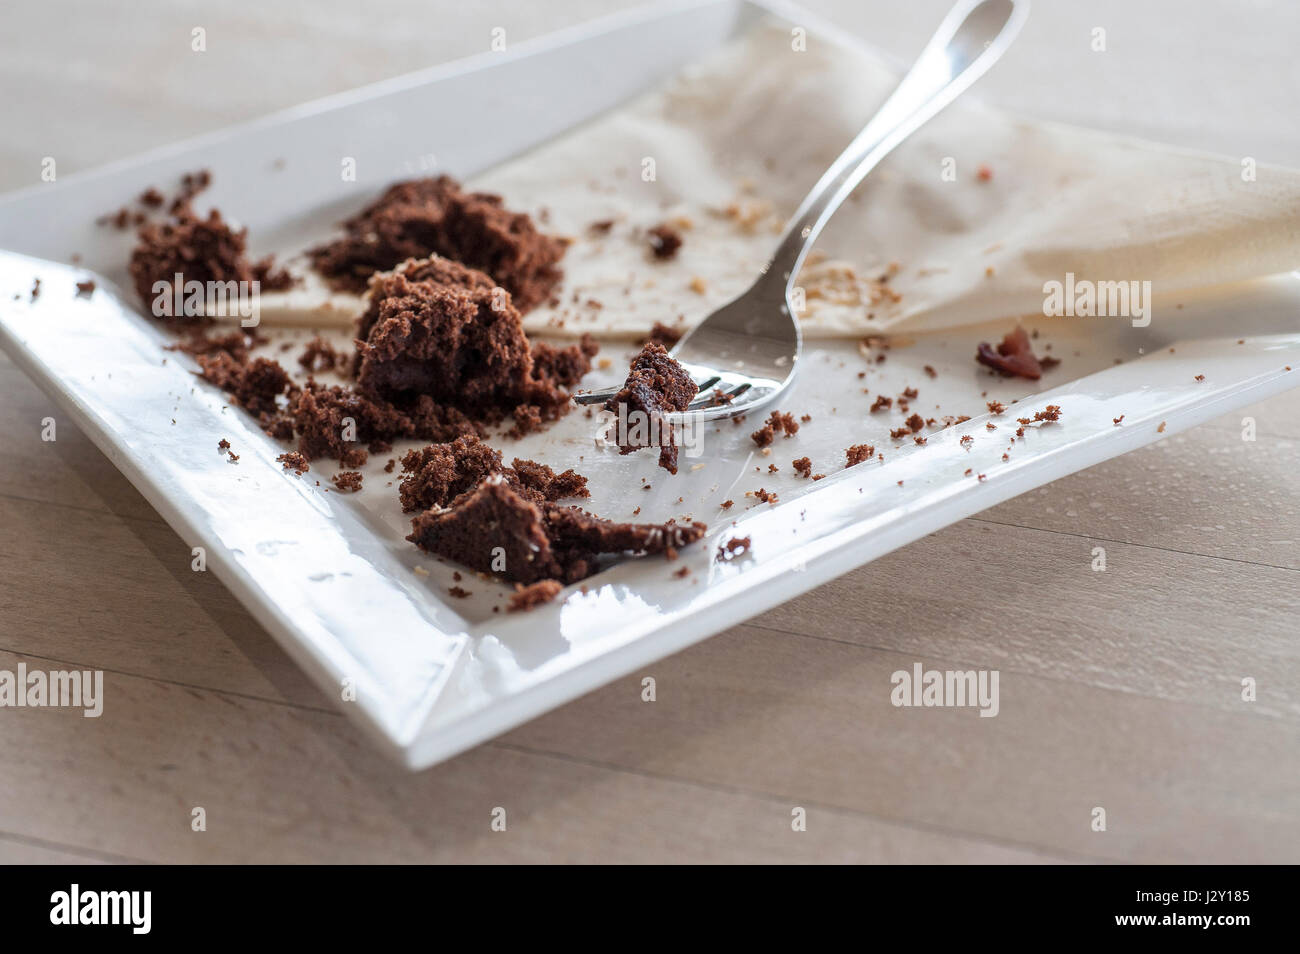 Los alimentos siguen siendo de una tarta de chocolate migas plato comido horquilla disfrutado tratar satisfecho Foto de stock